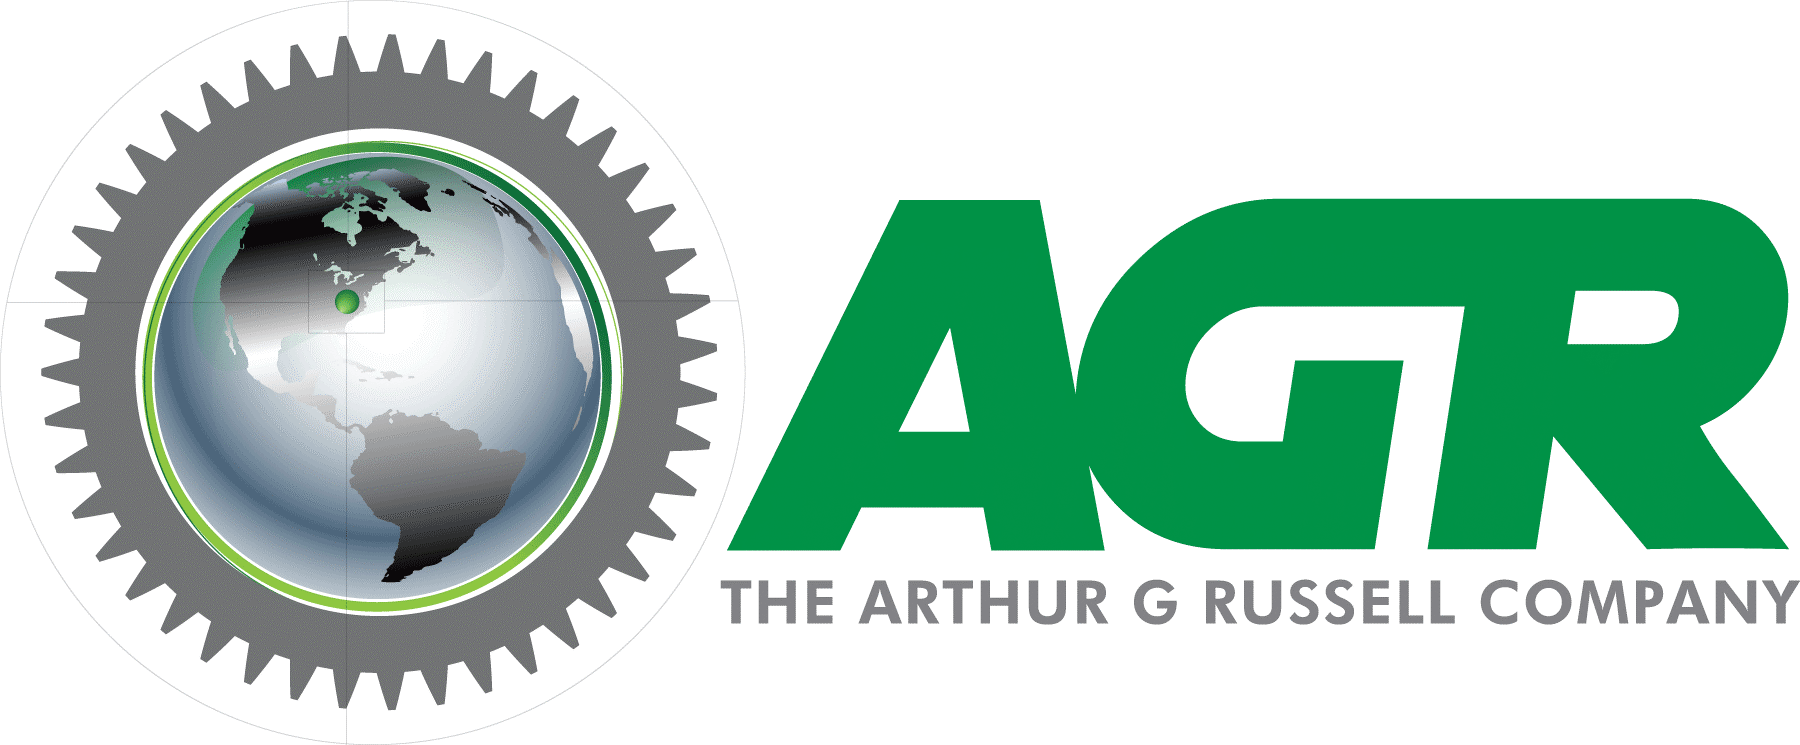 The Arthur G. Russell Co., Inc logo